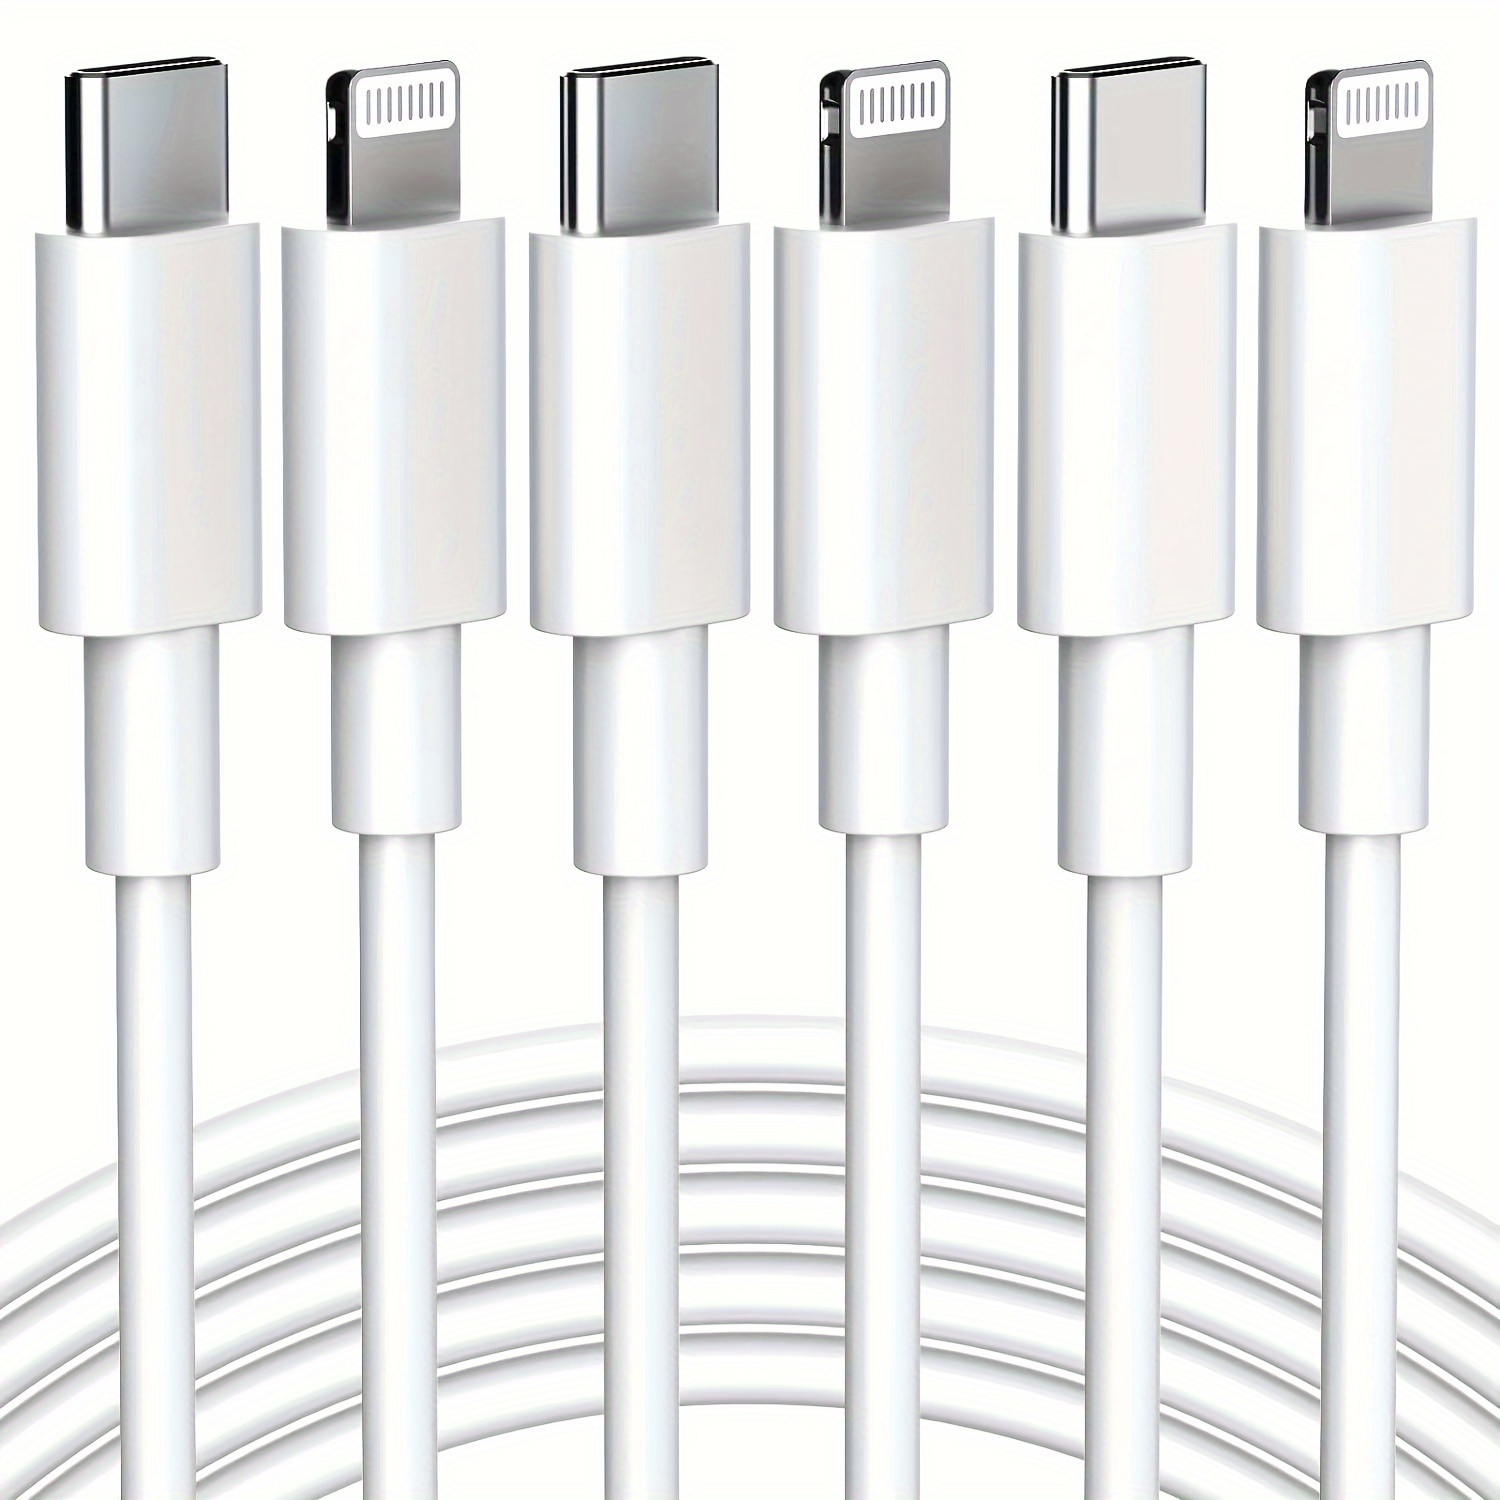 Cargador rápido para iPhone 15Pro, cargador USB C, [certificado Apple MFi],  paquete de 3 unidades de 20 W de doble puerto USB-C+USB-A adaptador de